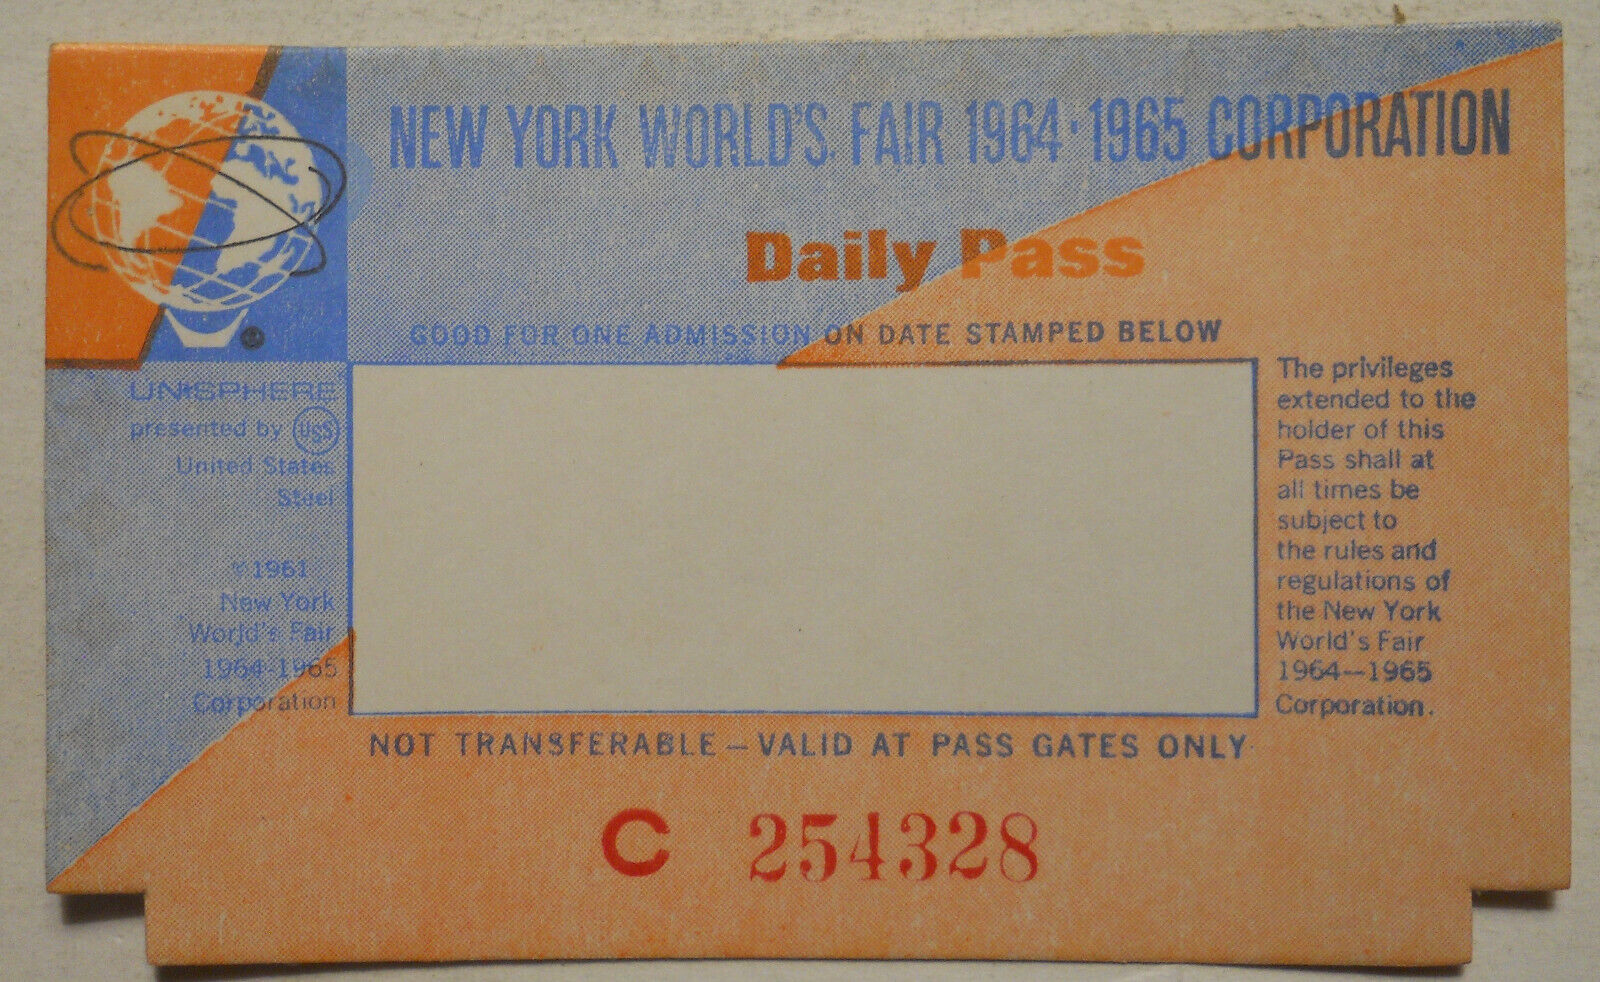 Unused 1964-1965 New York World's Fair Daily Pass